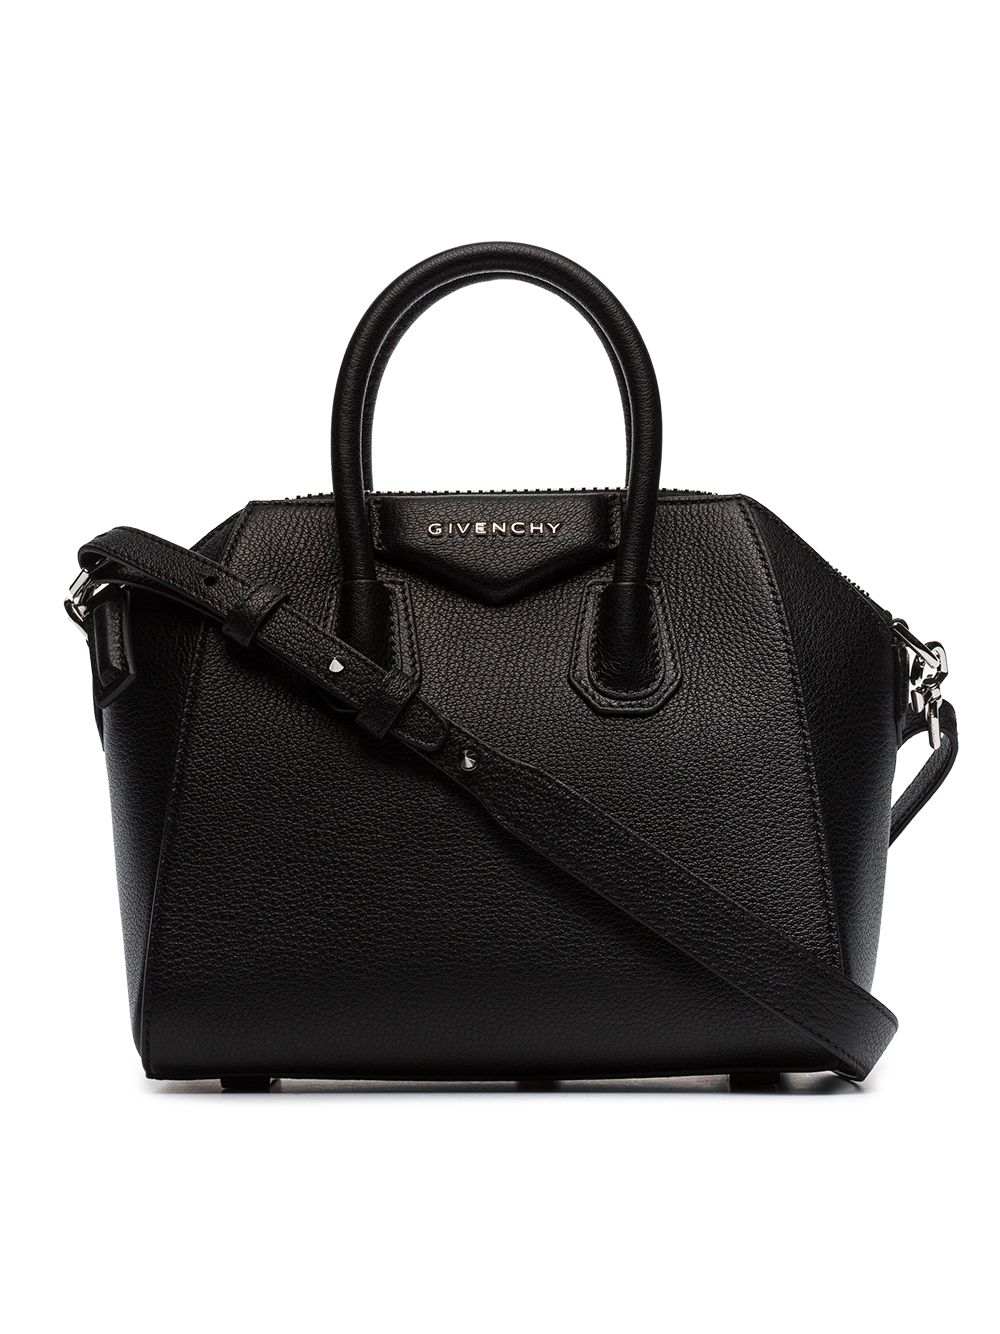 фото Givenchy сумка-тоут 'Antigona' размера мини